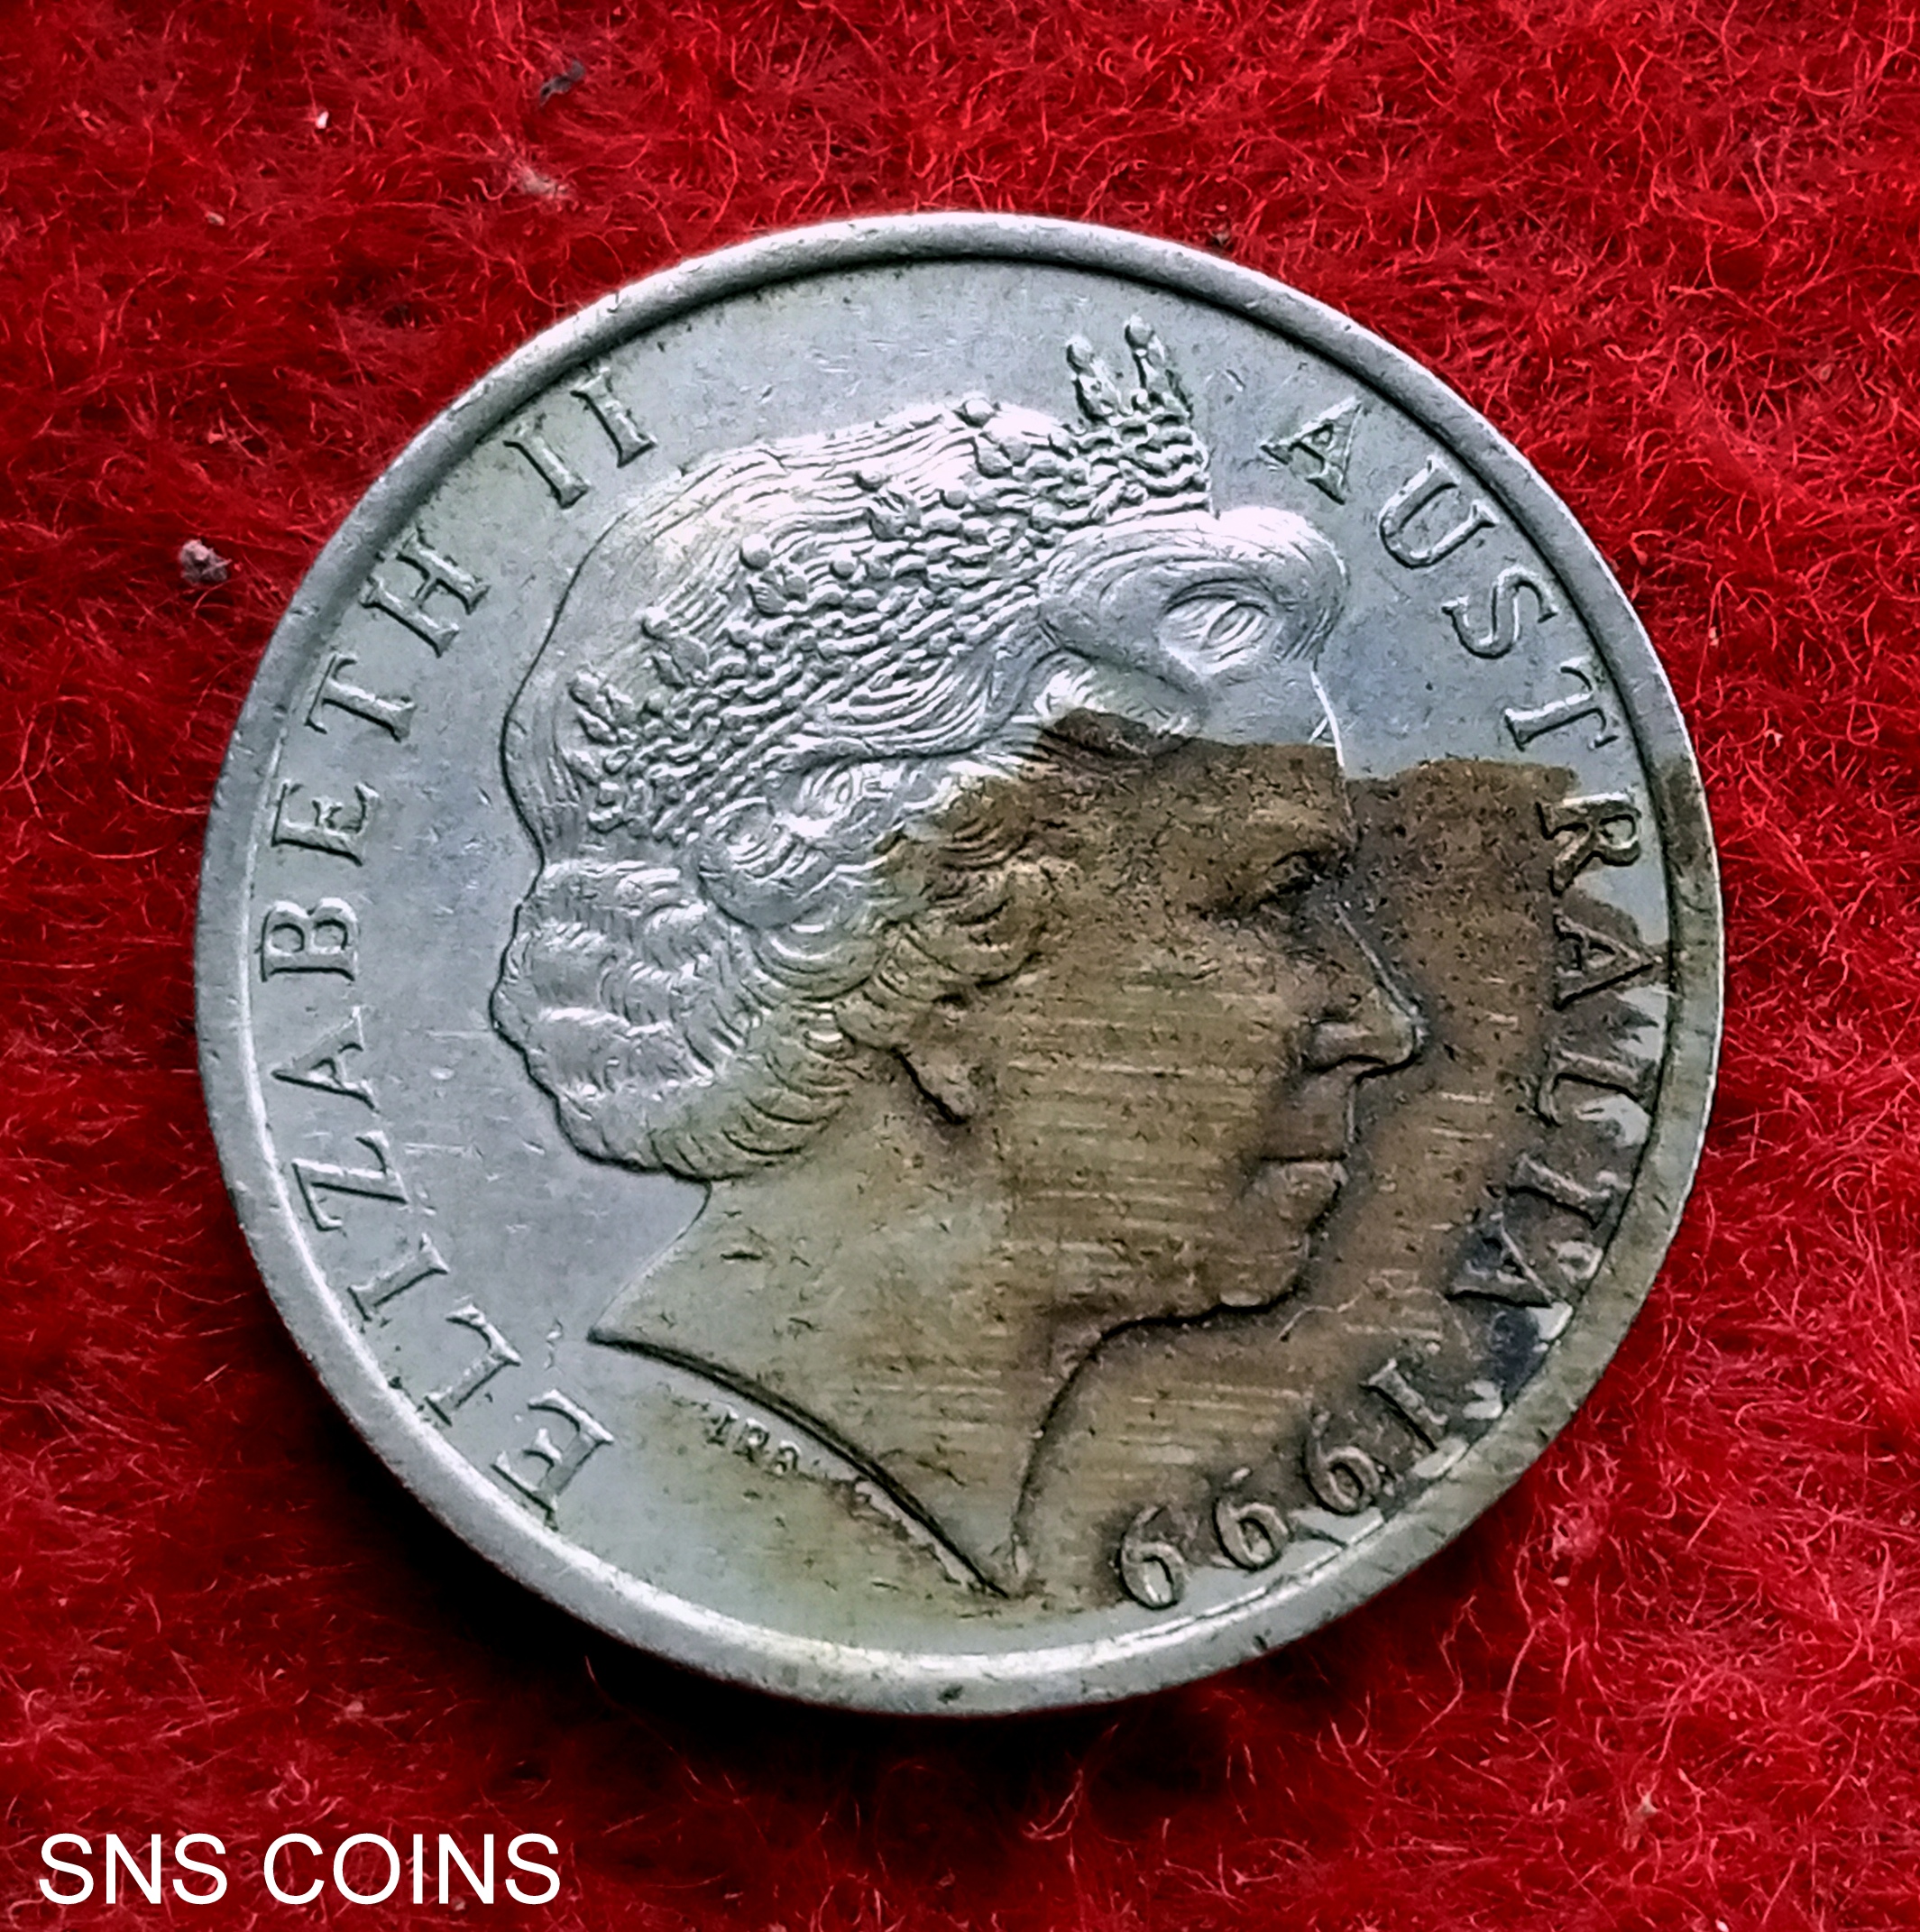 Australia 10 Cents Elizabeth II 1999 Coin